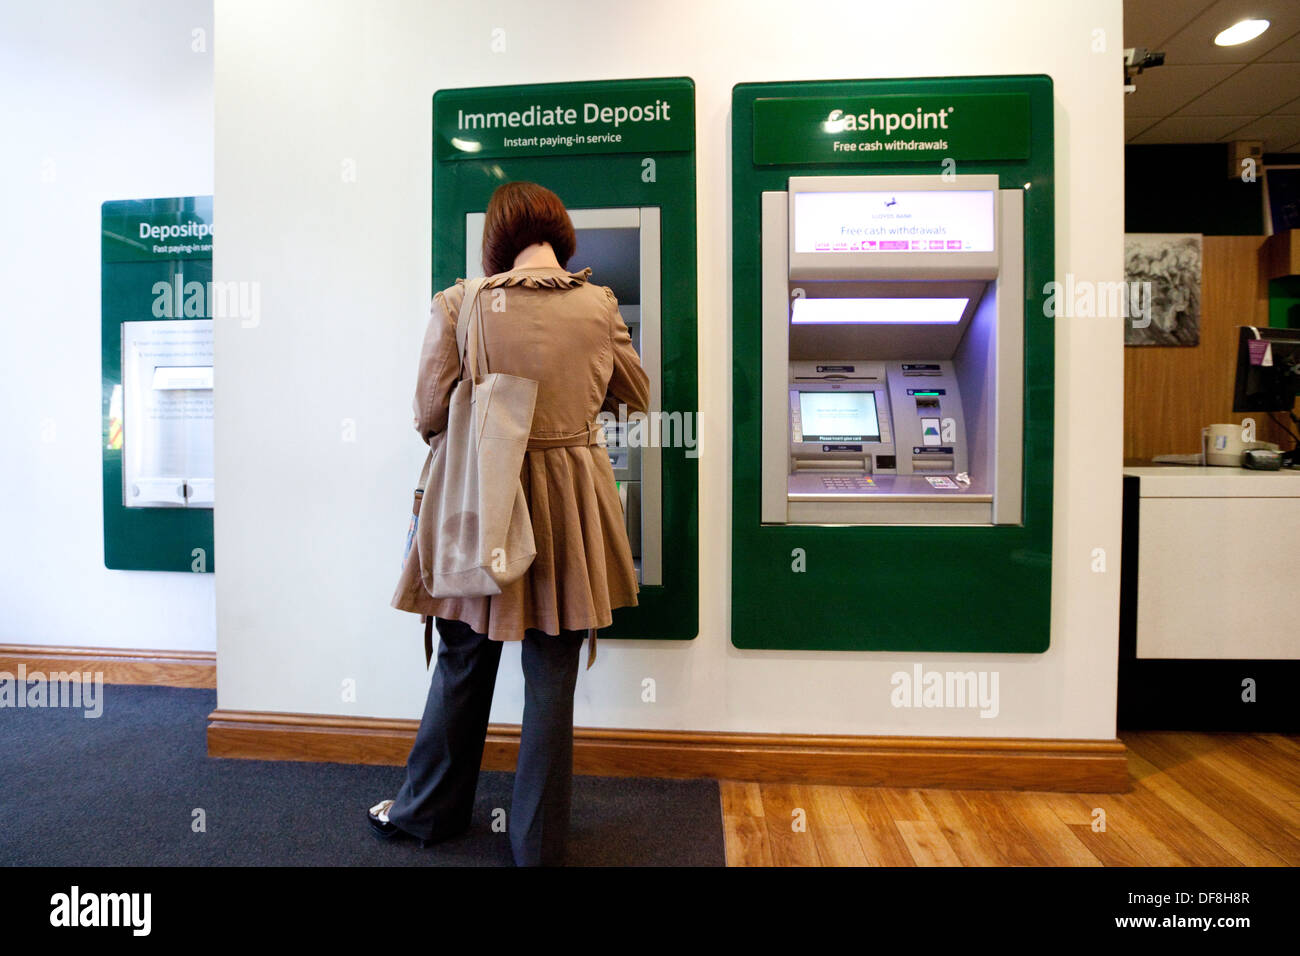 Un client en utilisant le nouveau dépôt immédiat facilty, intérieur de la Lloyds Bank, Concept de la technologie moderne dans les banques, UK Banque D'Images